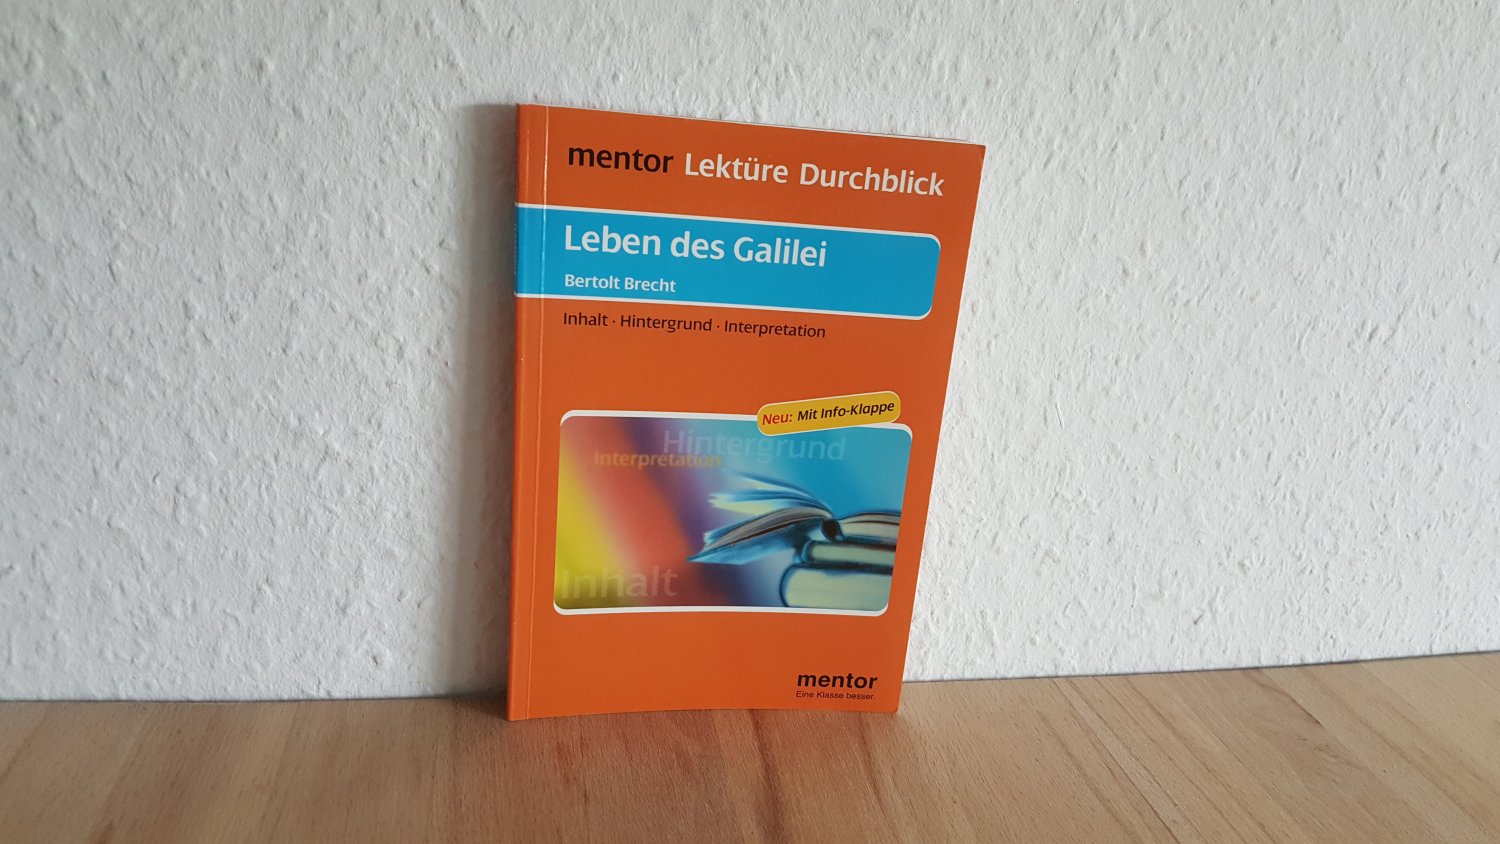 ISBN 9783580653033 "Bertolt Brecht: Leben des Galilei - Buch mit Info